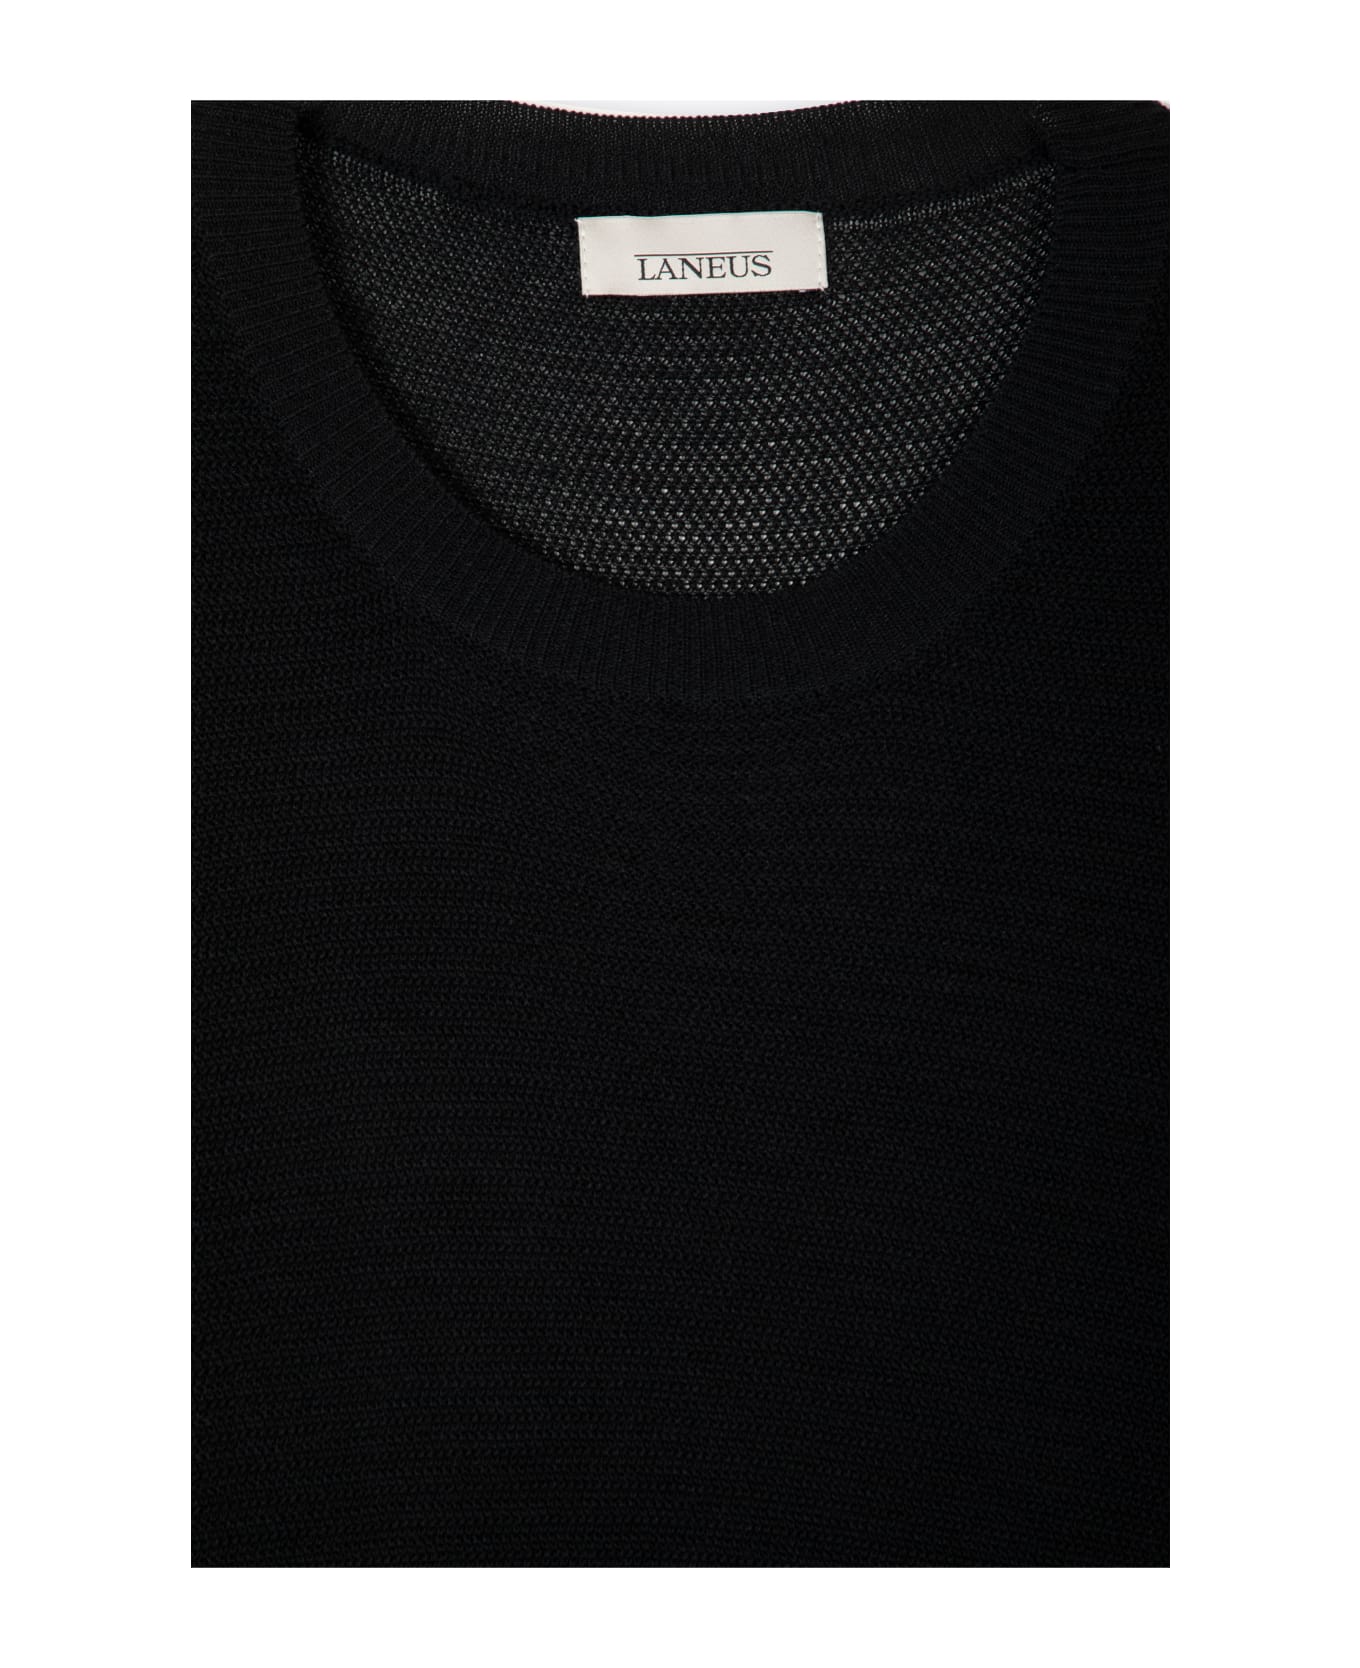 Laneus Girocollo M/c Cupro Black Knitted T-shirt - Nero